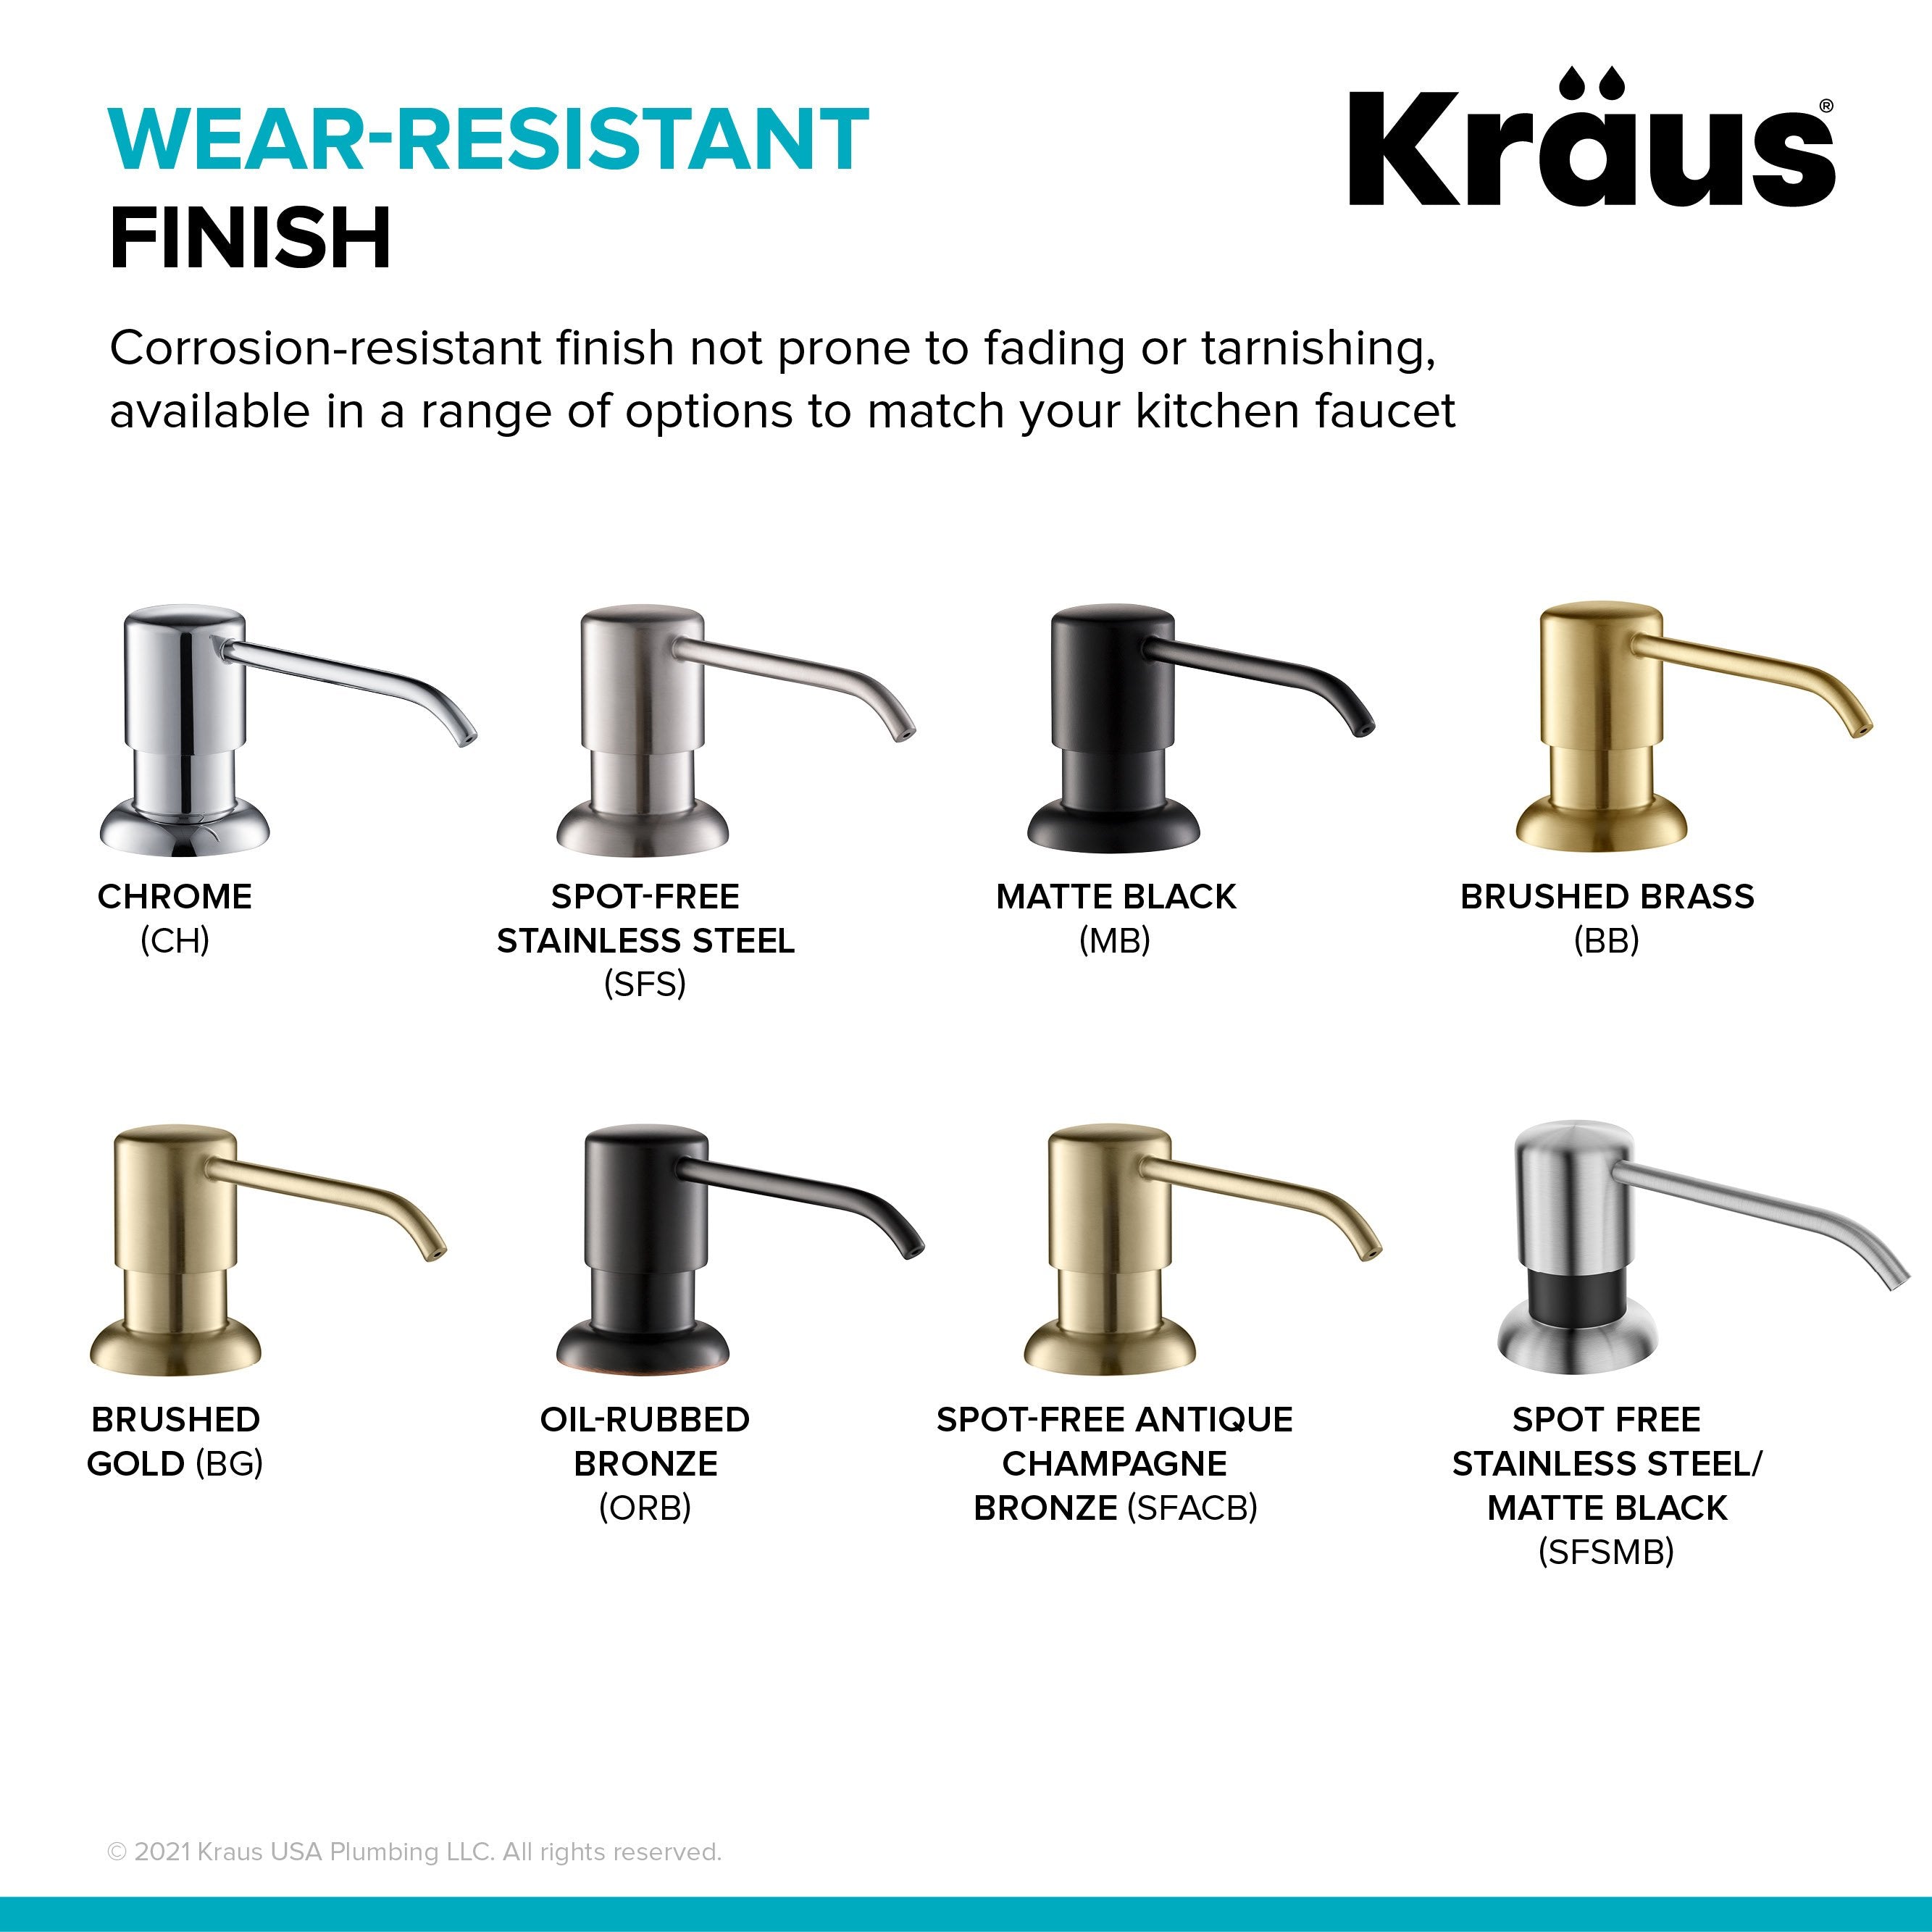 https://directsinks.com/cdn/shop/products/KRAUS-Soap-Dispenser-in-Spot-Free-Stainless-Steel-and-Matte-Black-KRAUS-DirectSinks-9_2667x2667.jpg?v=1654325812